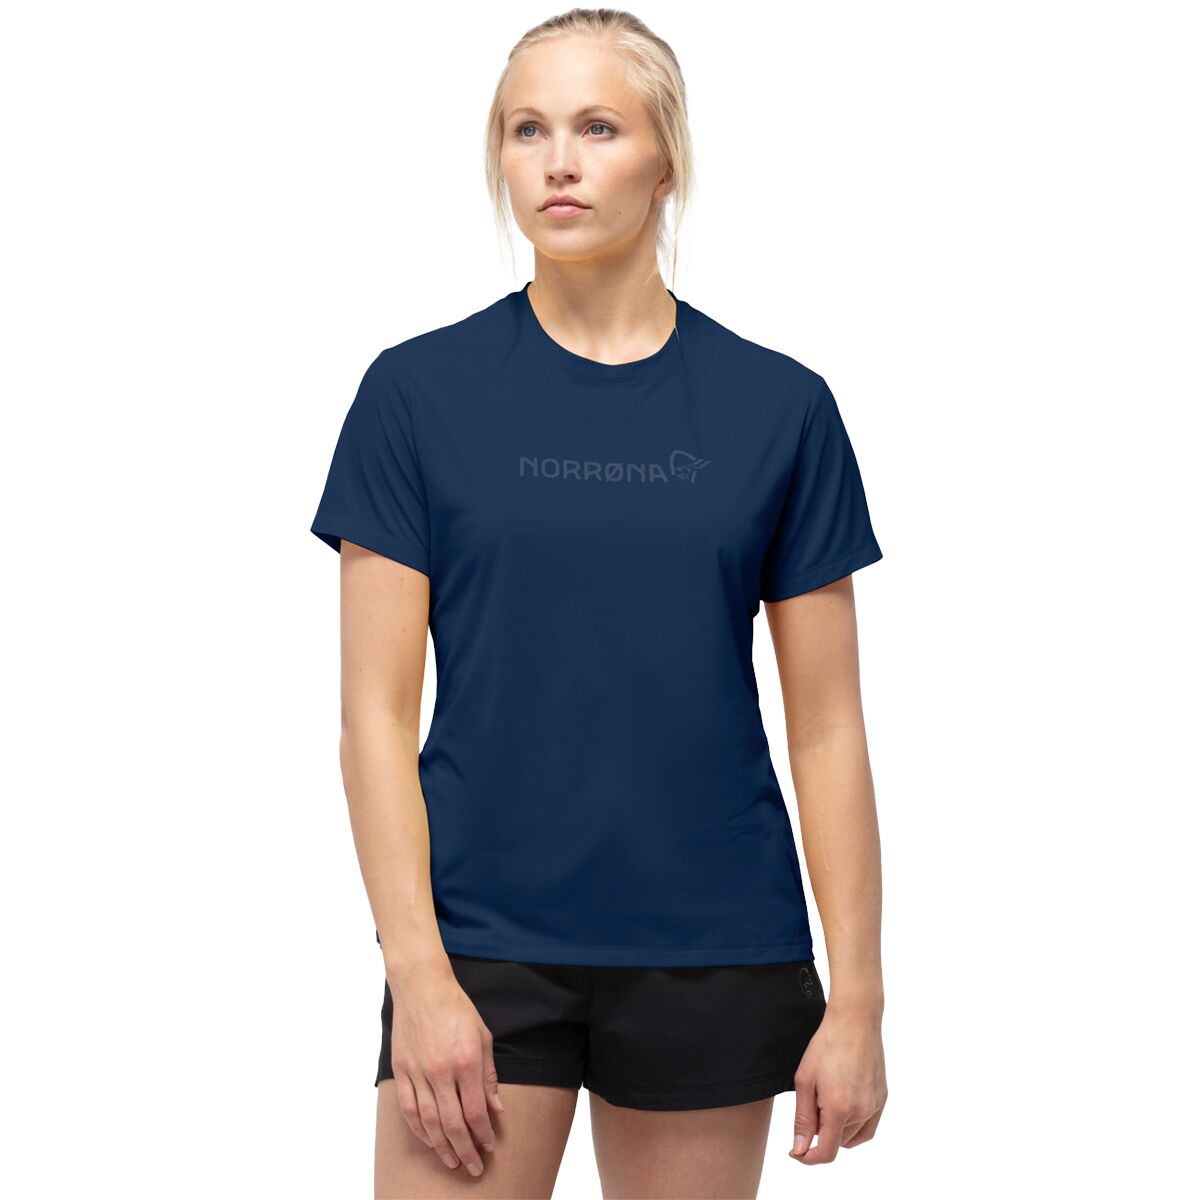 Norrona Tech T-Shirt - Women's